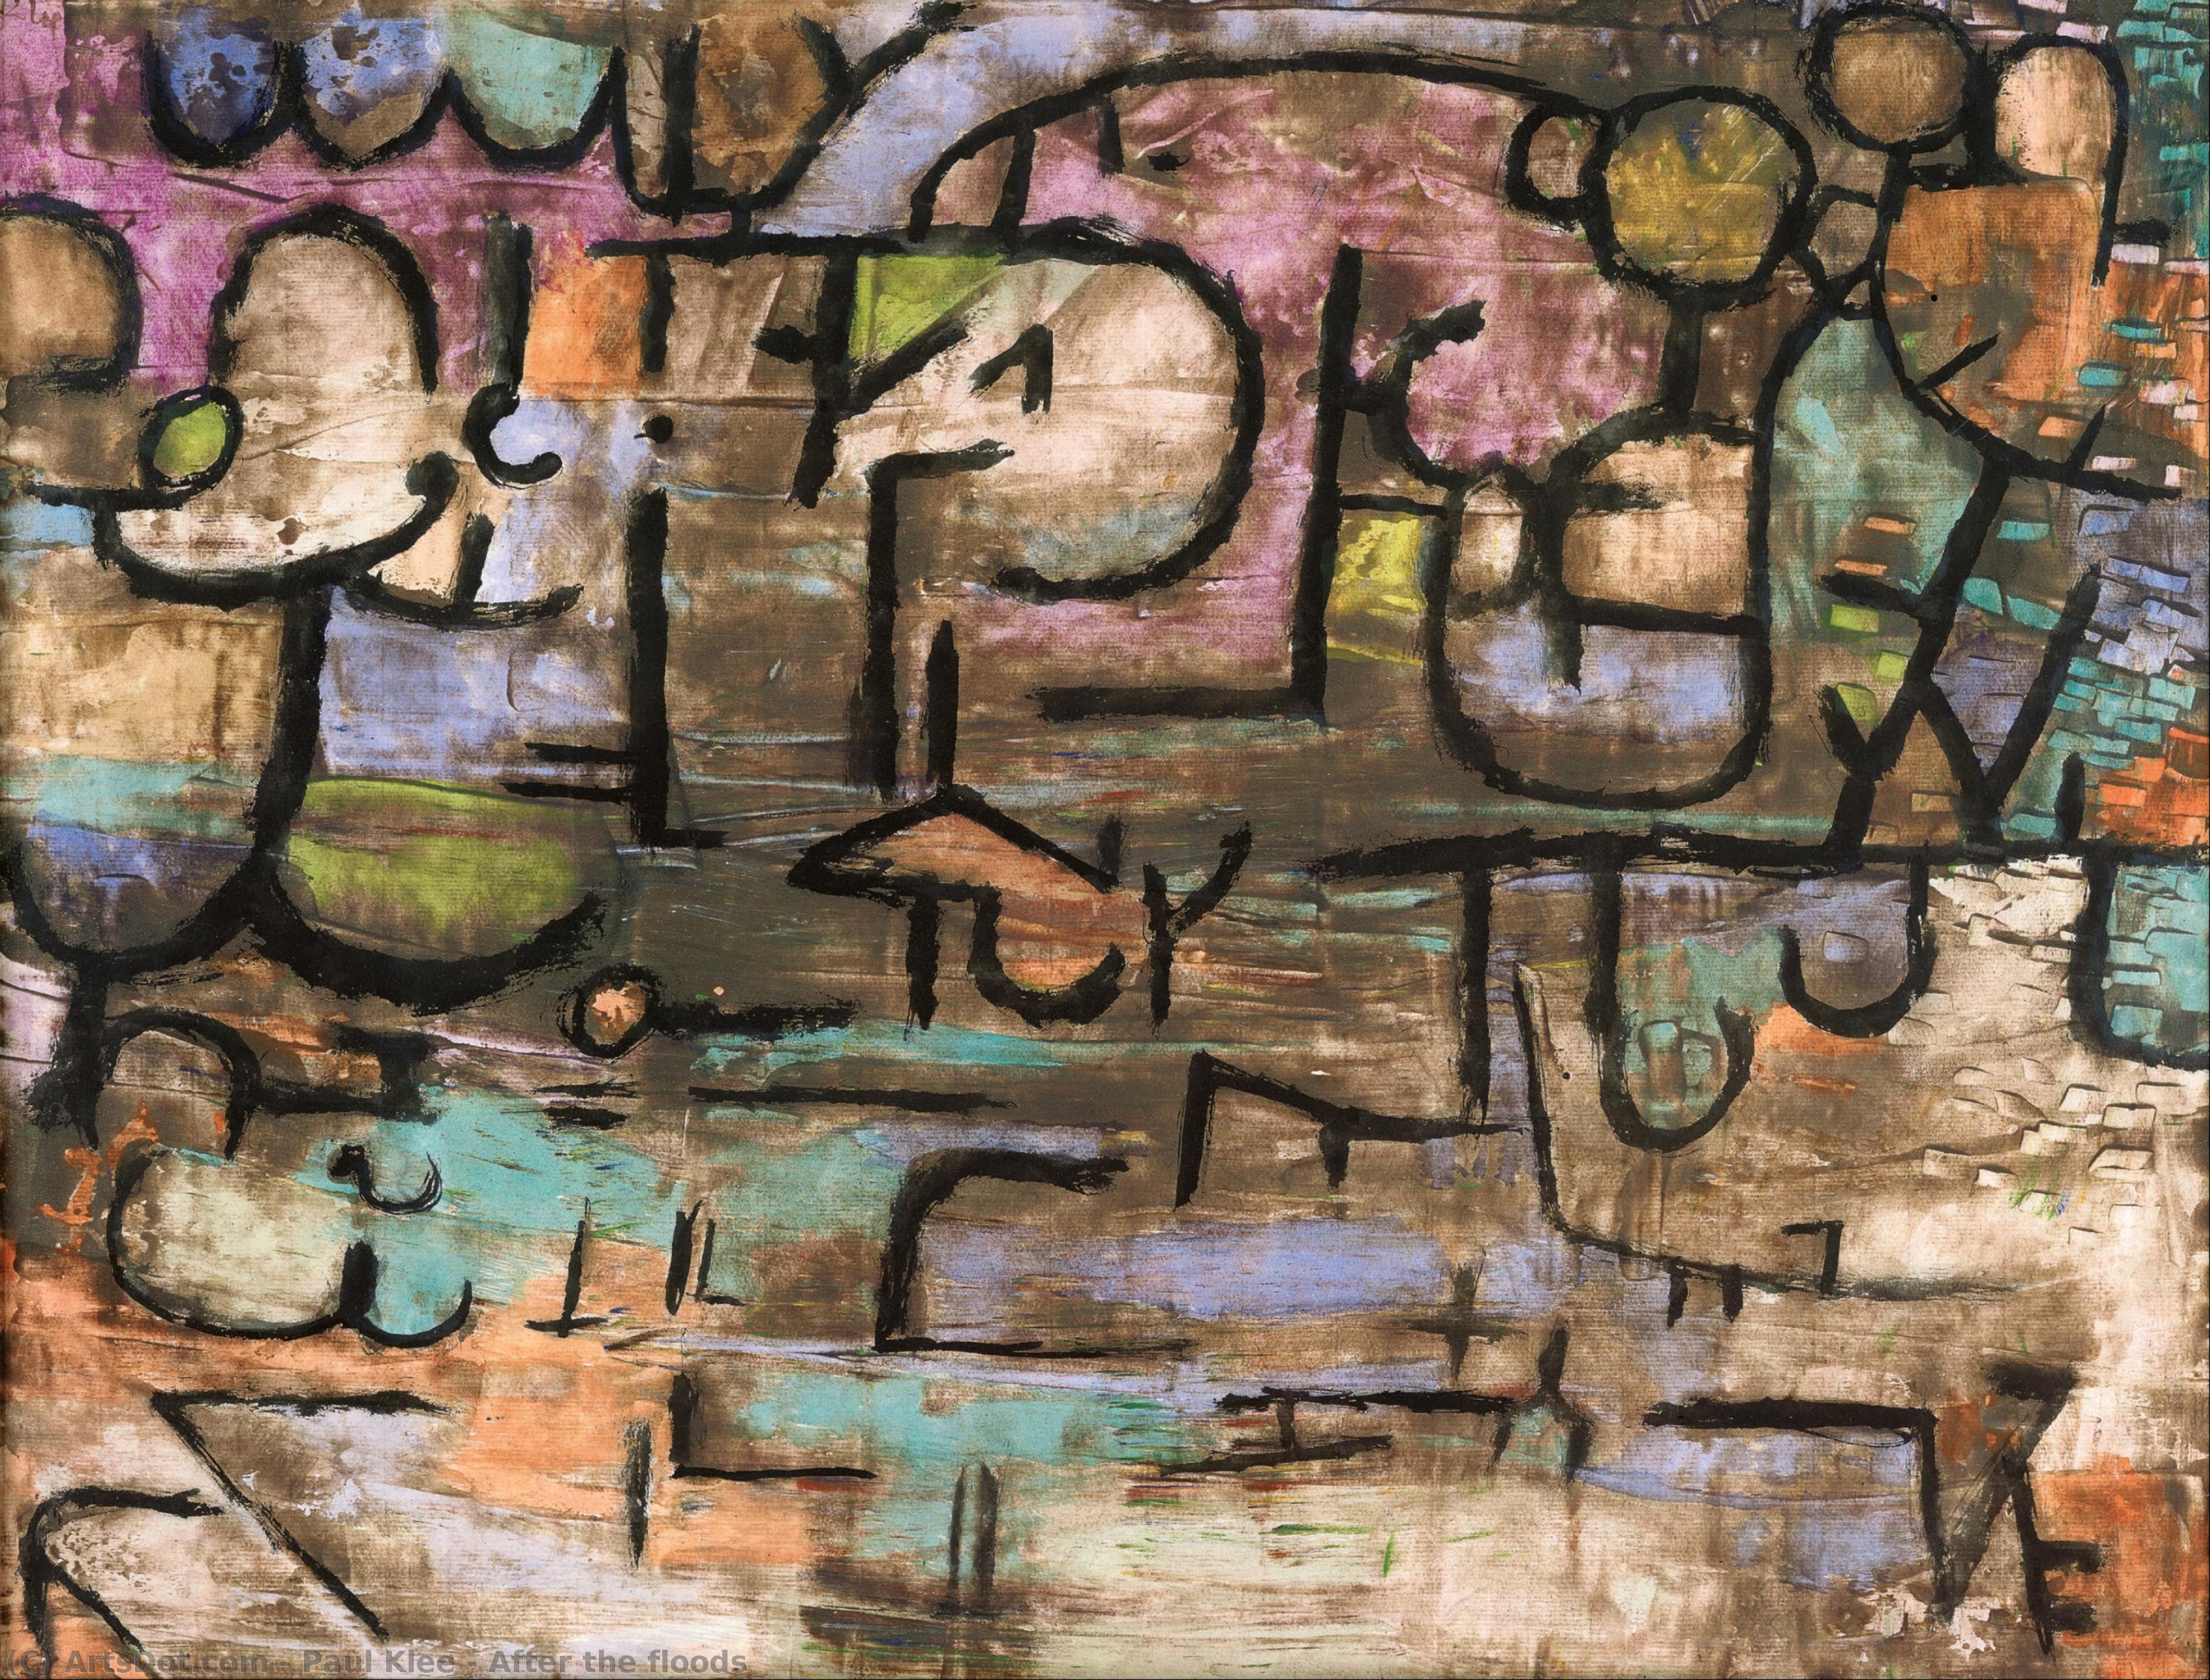 WikiOO.org - Enciklopedija dailės - Tapyba, meno kuriniai Paul Klee - After the floods